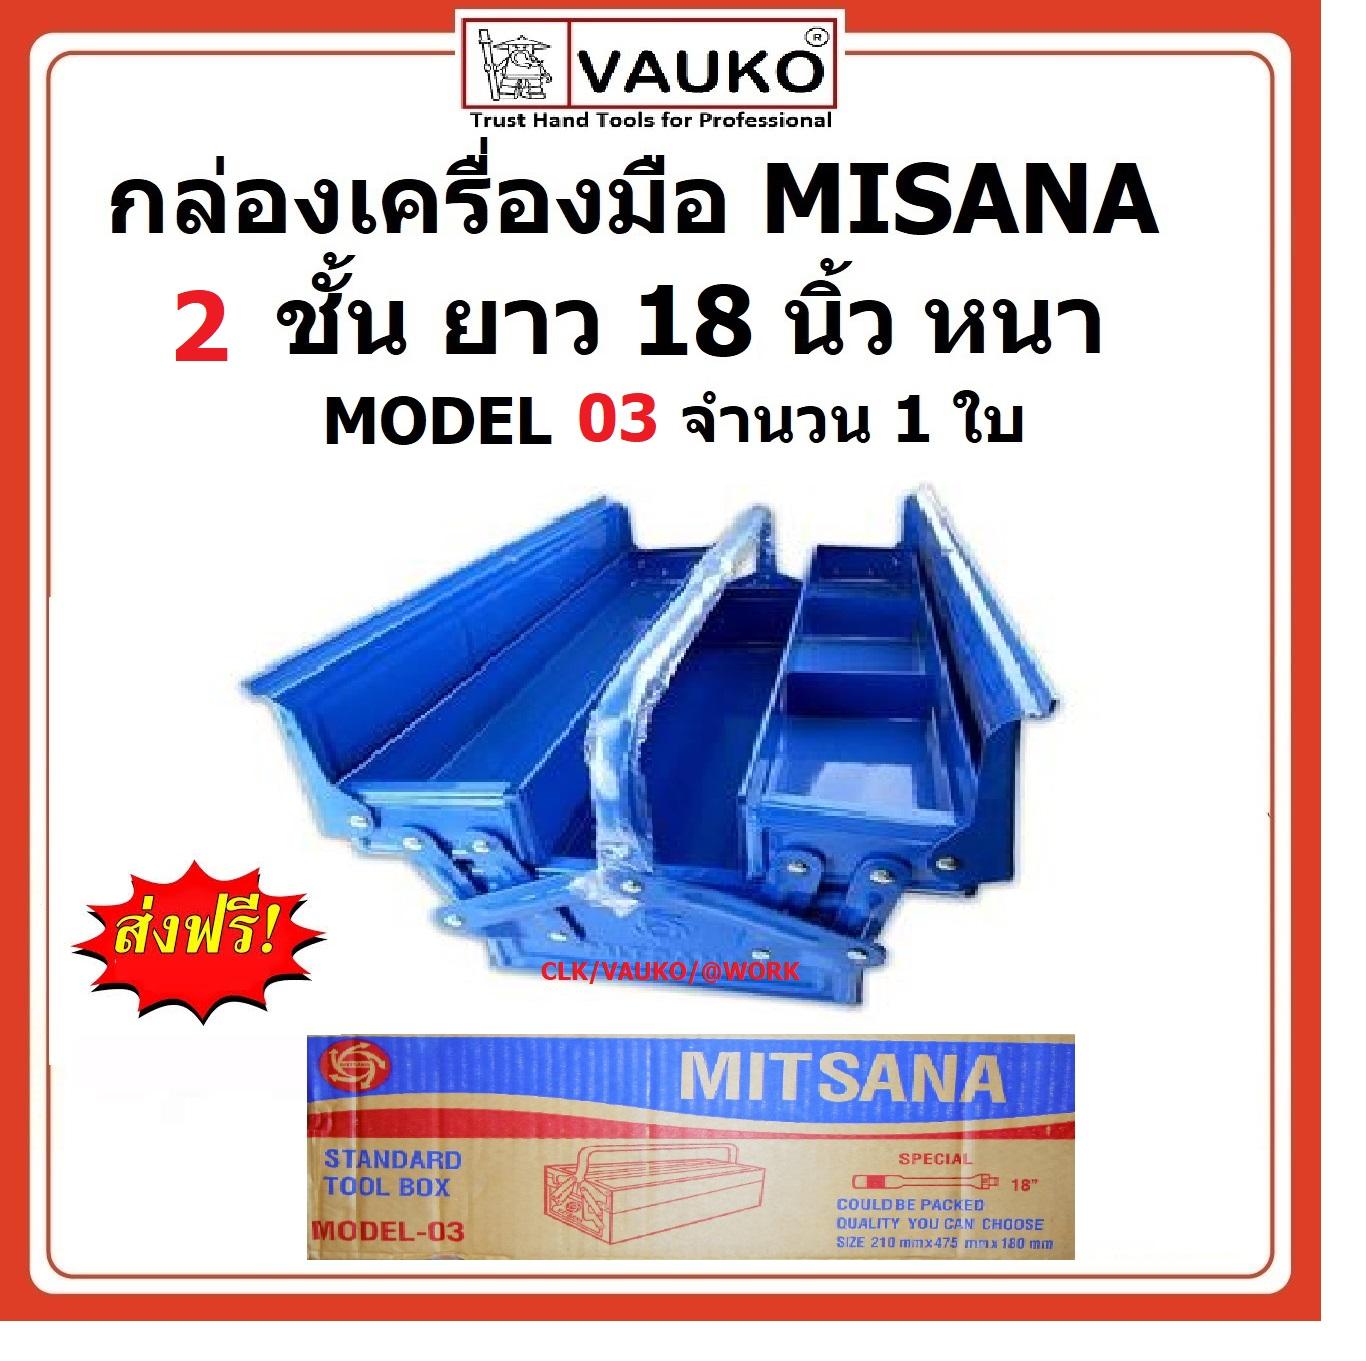 VAUKO : MITSANA กล่องเครื่องมือ กล่องเก็บเครื่องมือ กล่องใส่เครื่องมือ 2 ชั้น 18 นิ้ว รุ่น MITSANA-MODEL-03 สี น้ำเงิน สี น้ำเงิน